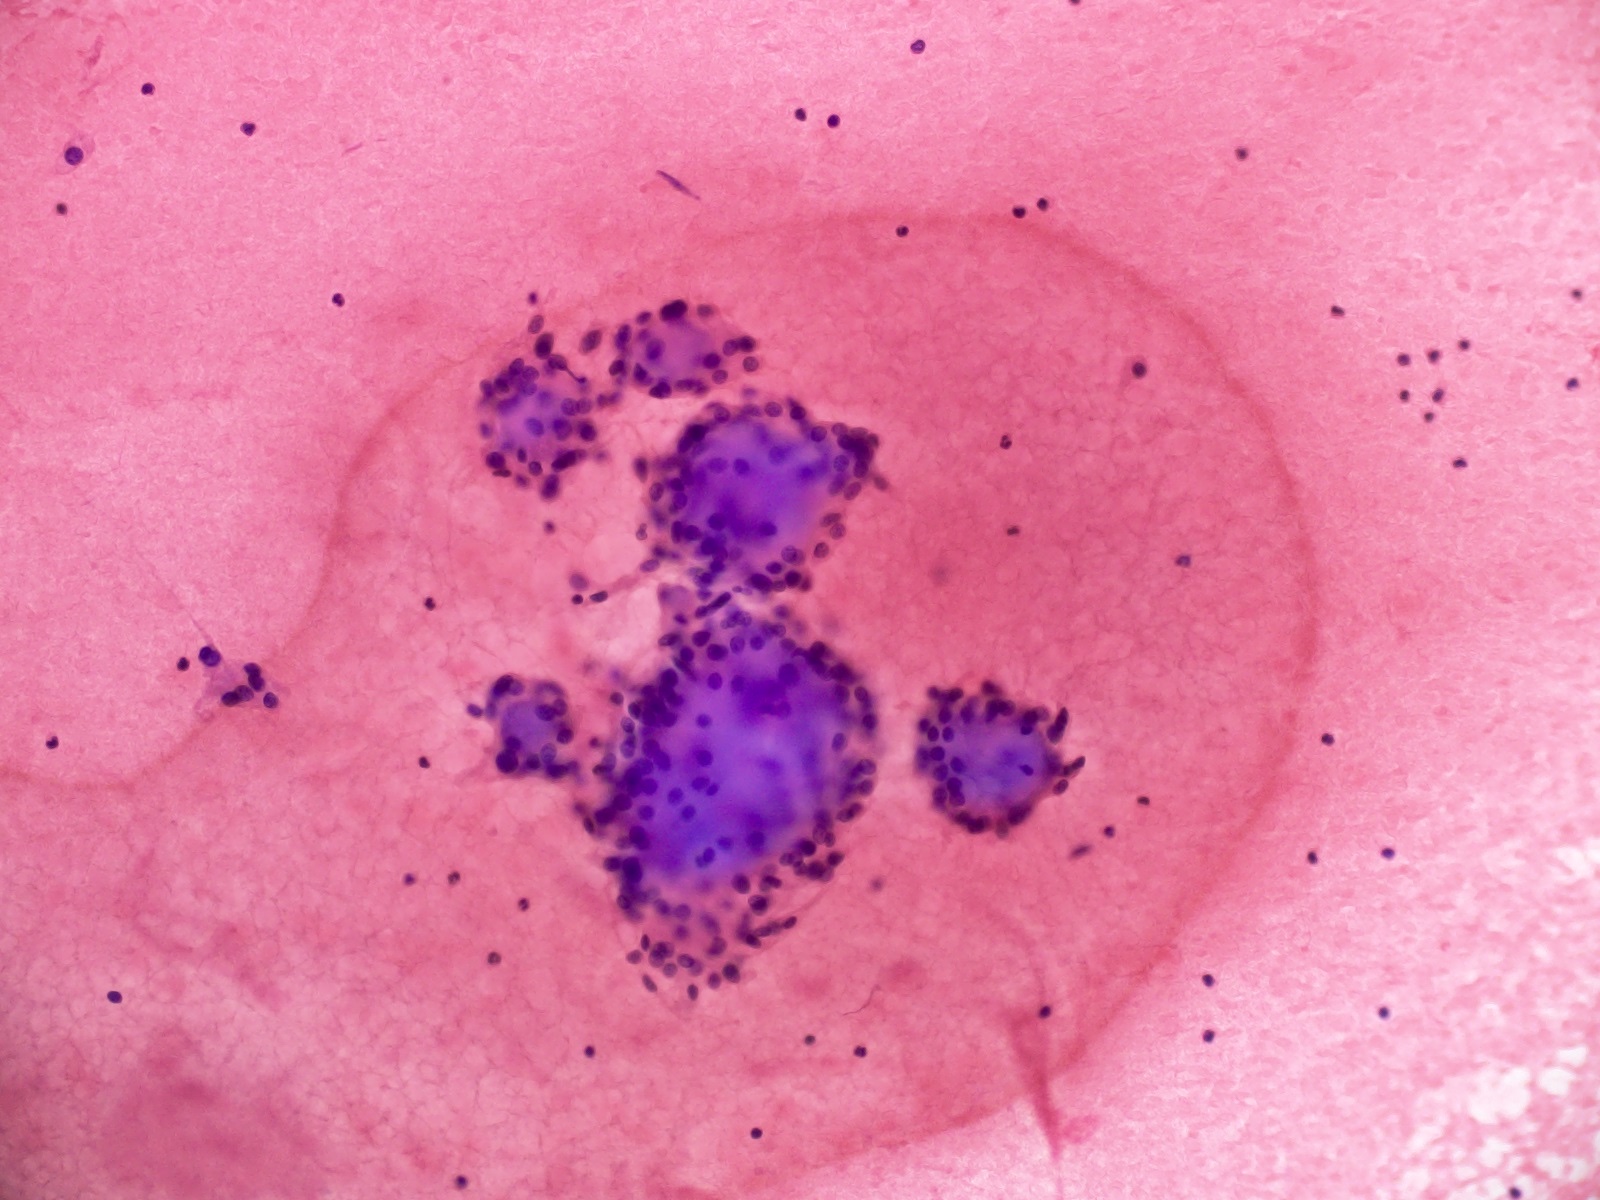 Stromal globules